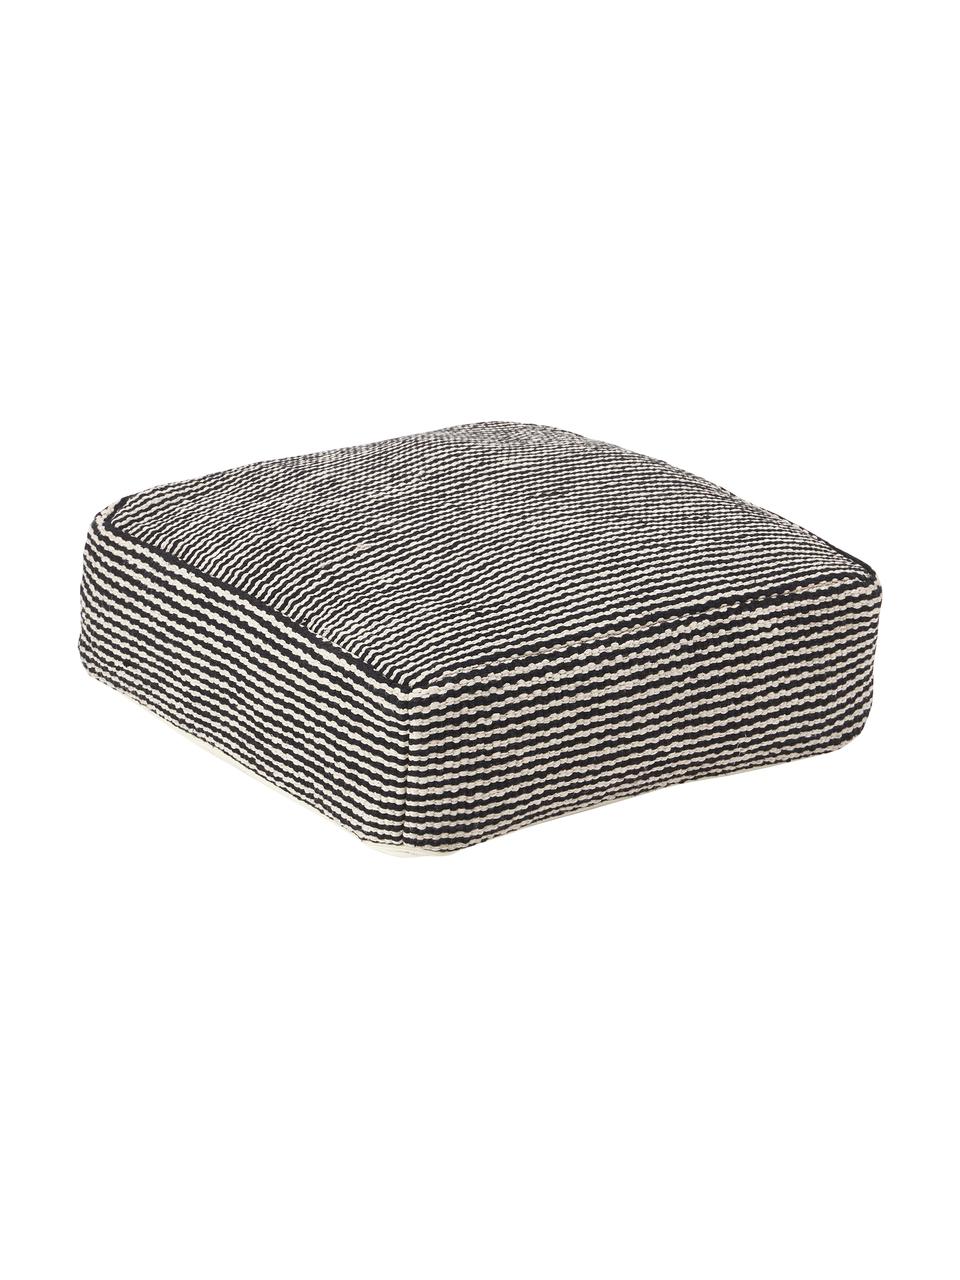 Poduszka podłogowa z bawełny Carmelo, Tapicerka: 100% bawełna, Czarny, biały, S 60 x W 20 cm